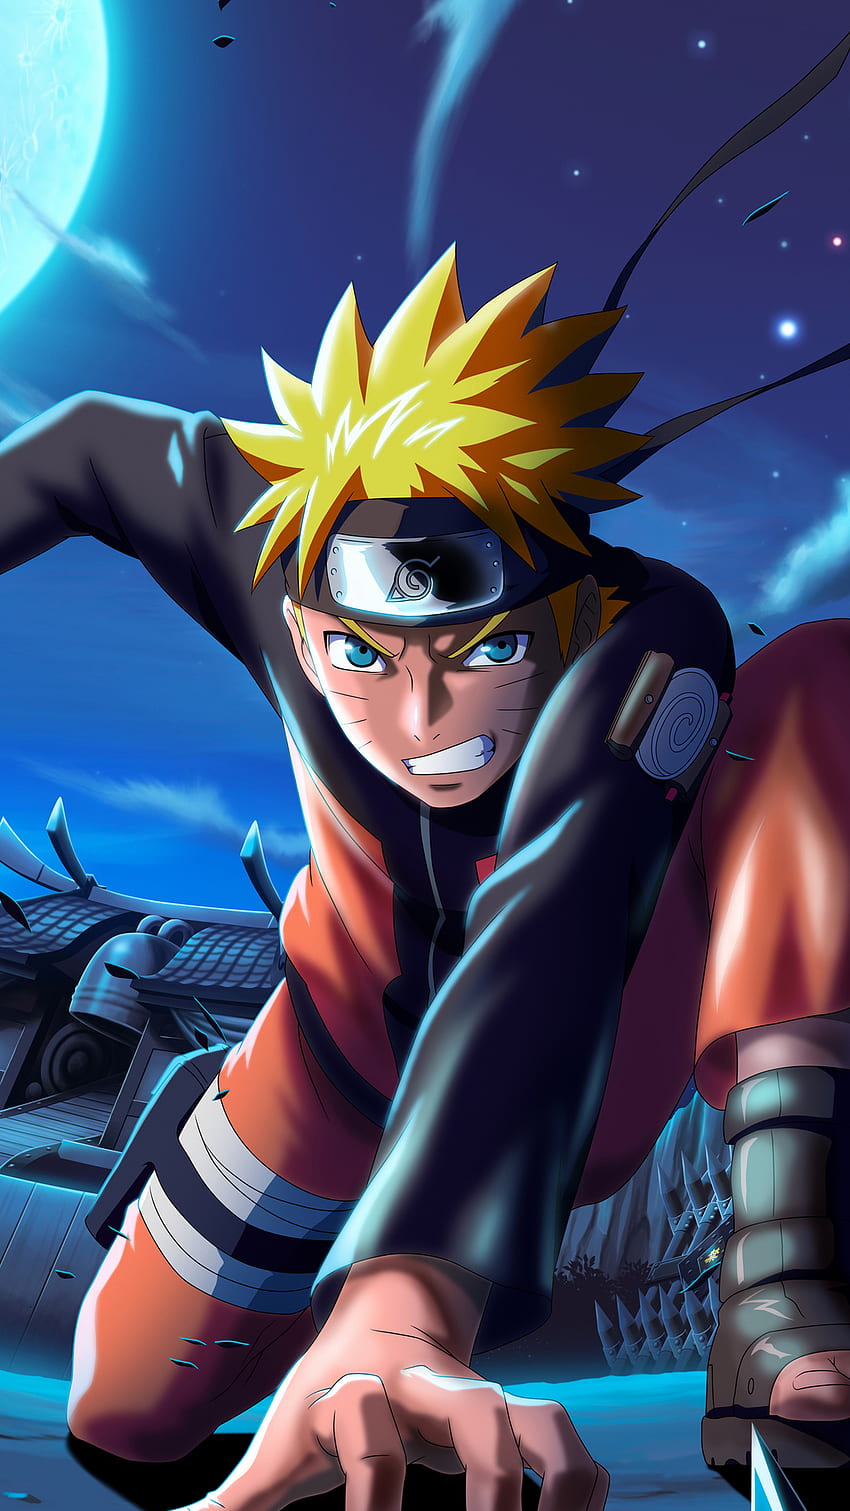 Naruto x Boruto Ninja Voltage là một trong những trò chơi được yêu thích nhất trên điện thoại di động. Với hình ảnh đẹp mắt và âm thanh sống động, game mang đến một trải nghiệm chơi game thú vị và đắm chìm vào thế giới của các nhân vật Naruto và Boruto. Hãy xem hình ảnh liên quan để khám phá thêm về game.